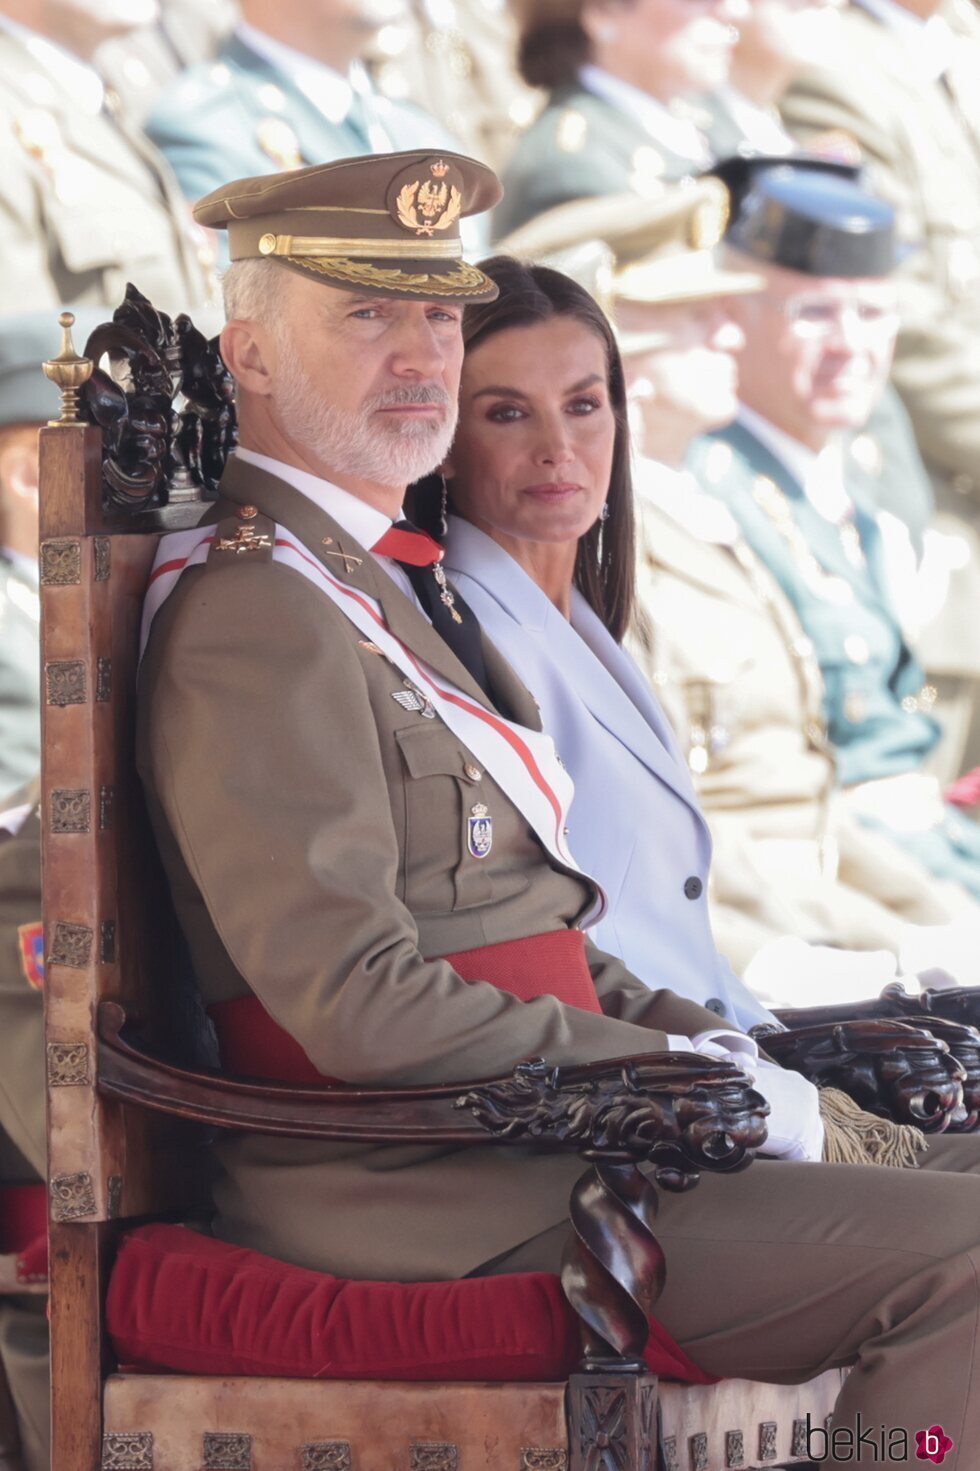 Los Reyes Felipe y Letizia en el acto del 40 aniversario de la jura de bandera del monarca